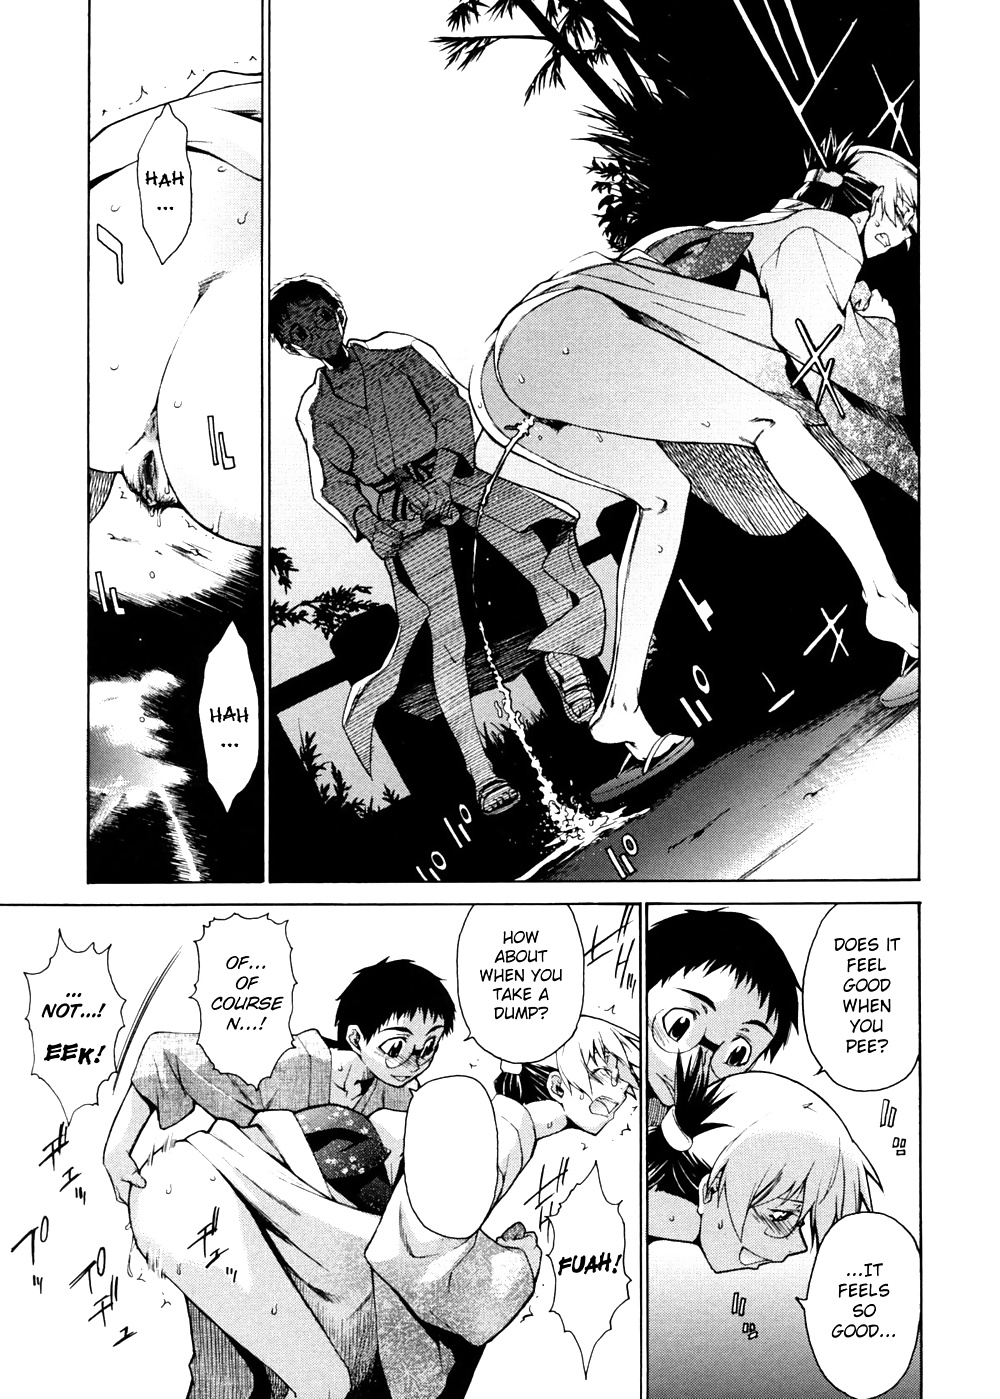 Domin-8 Me Take On me Hentai Manga Part 4 - Photo #48.